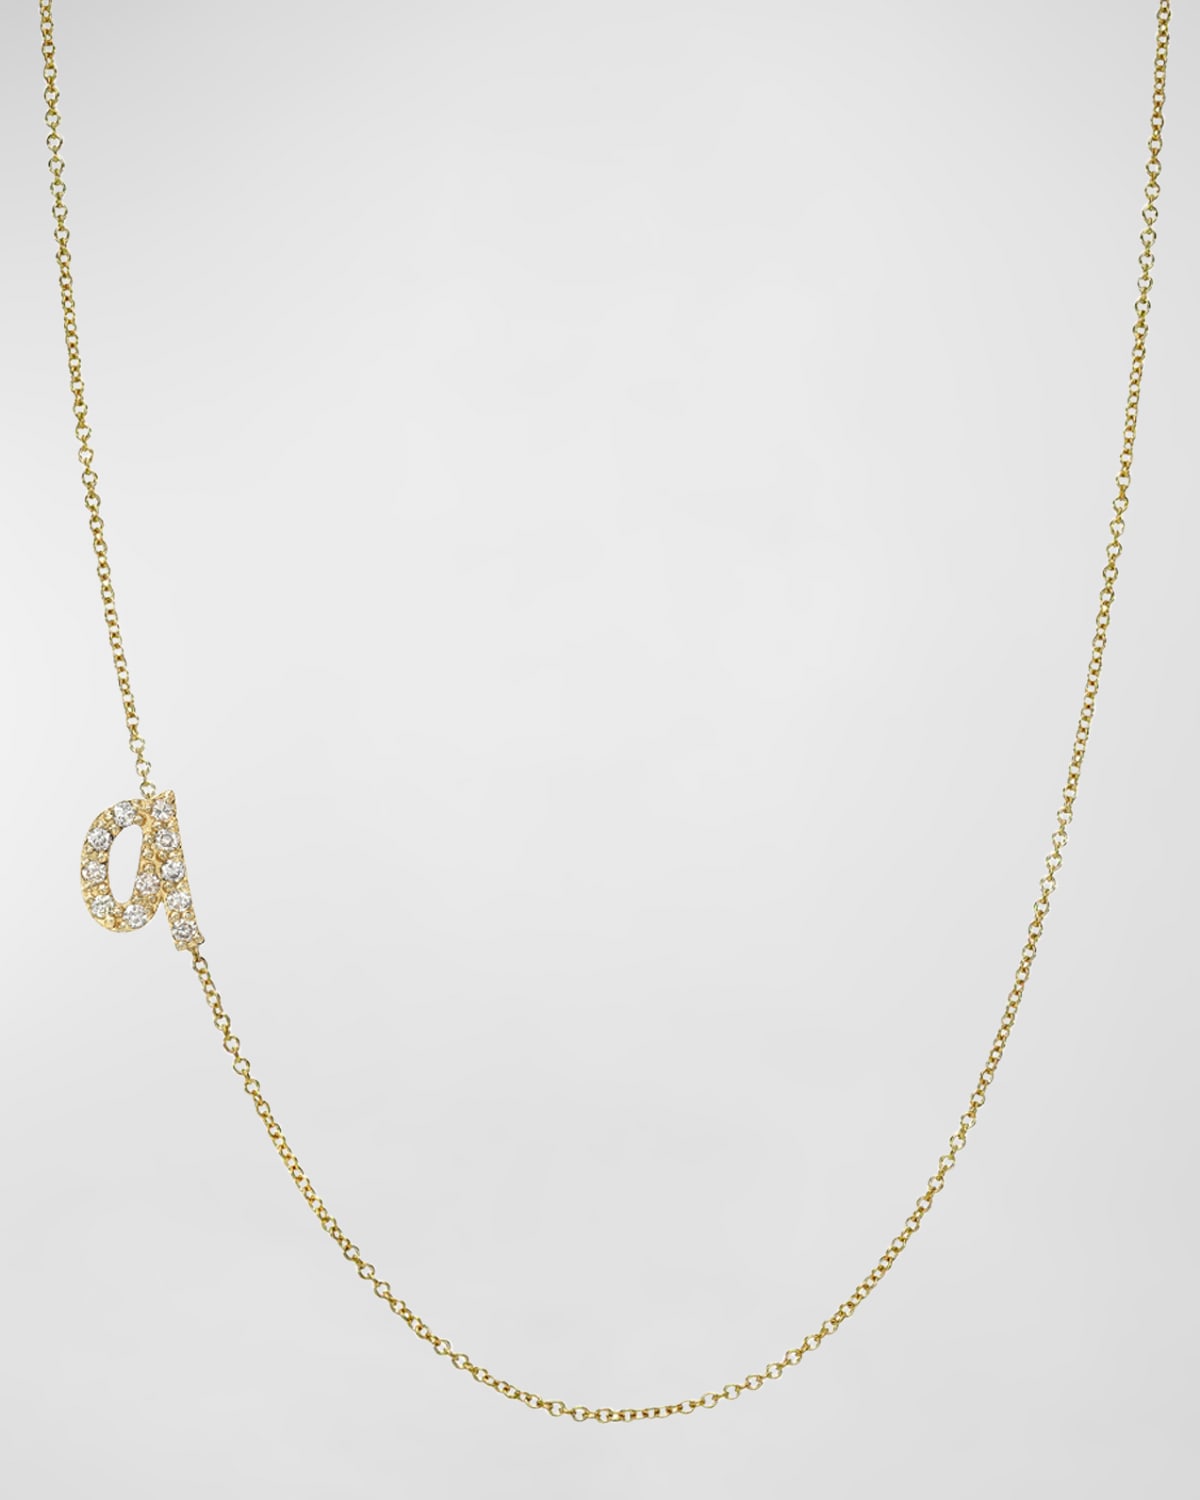 Zoe Lev Jewelry 14k Gold Diamond Mini Script Initial Pendant Necklace In Q